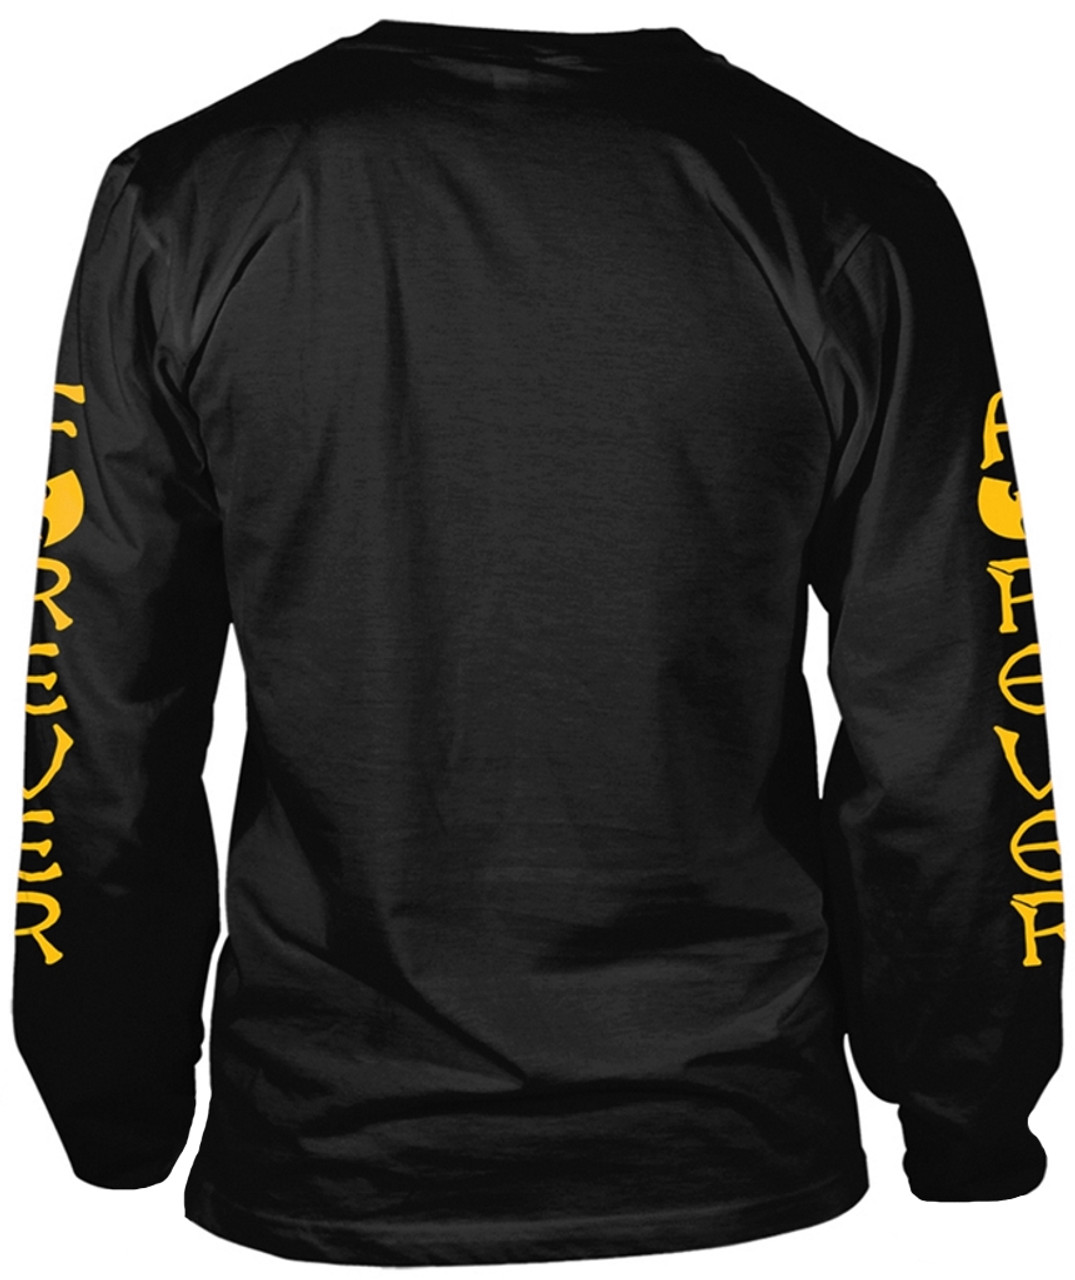 Wu-Tang Clan 'Logo' Long Sleeve Shirt